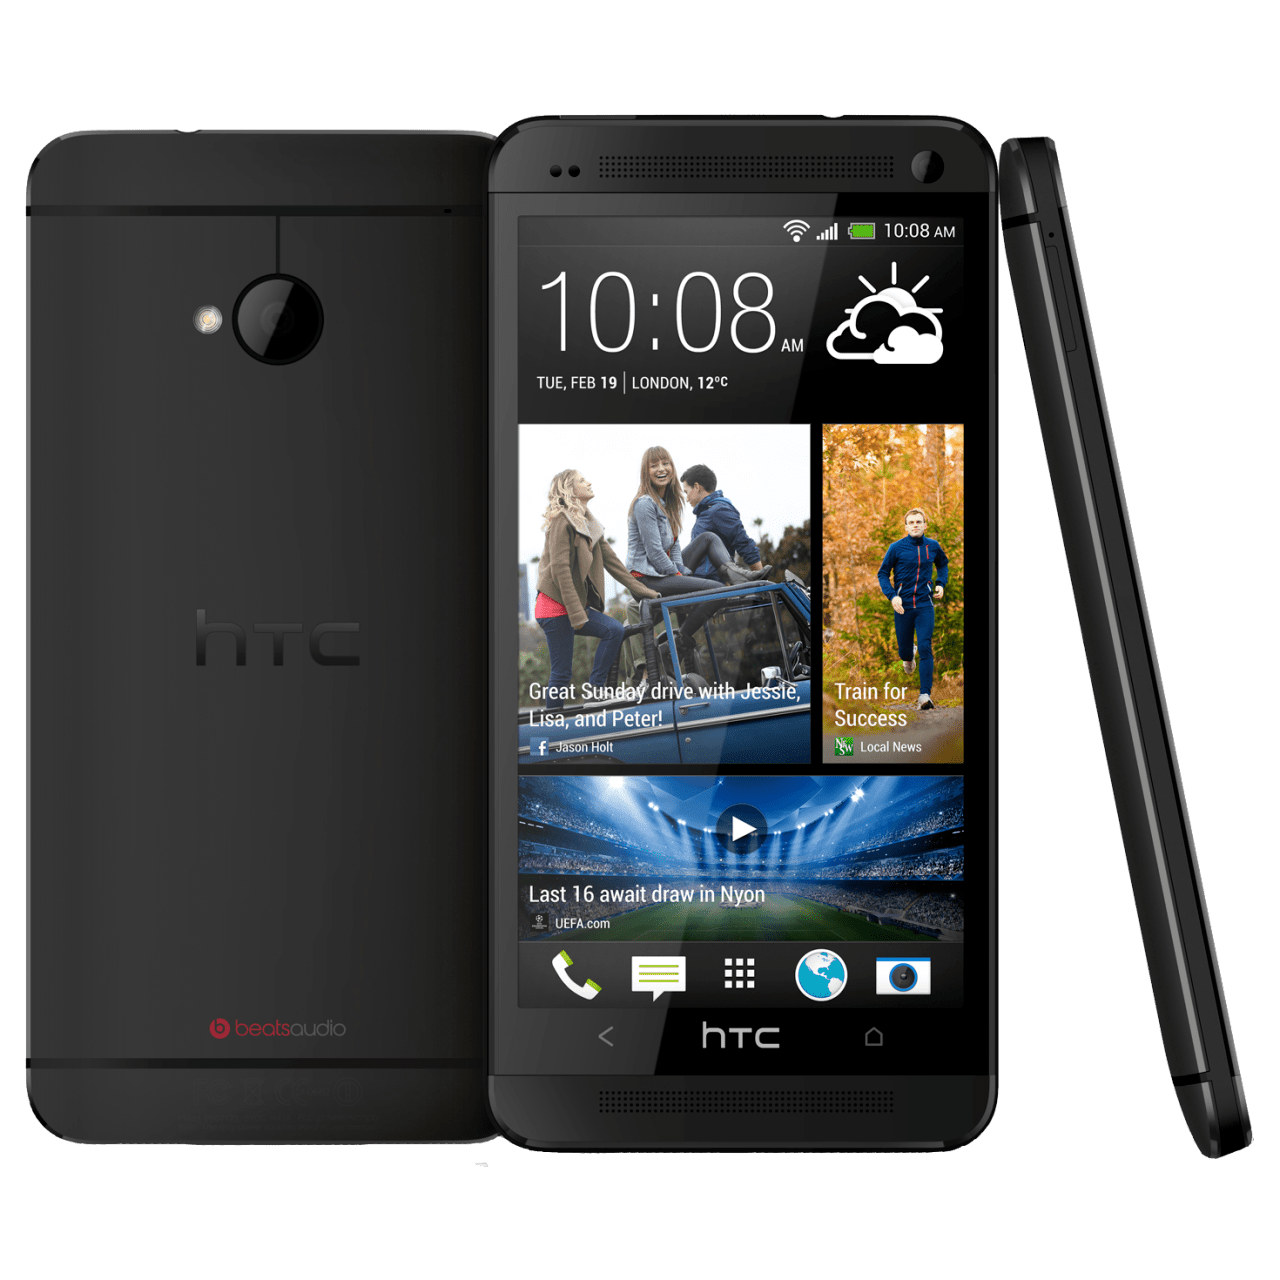 HTC One en nuevo video promocional